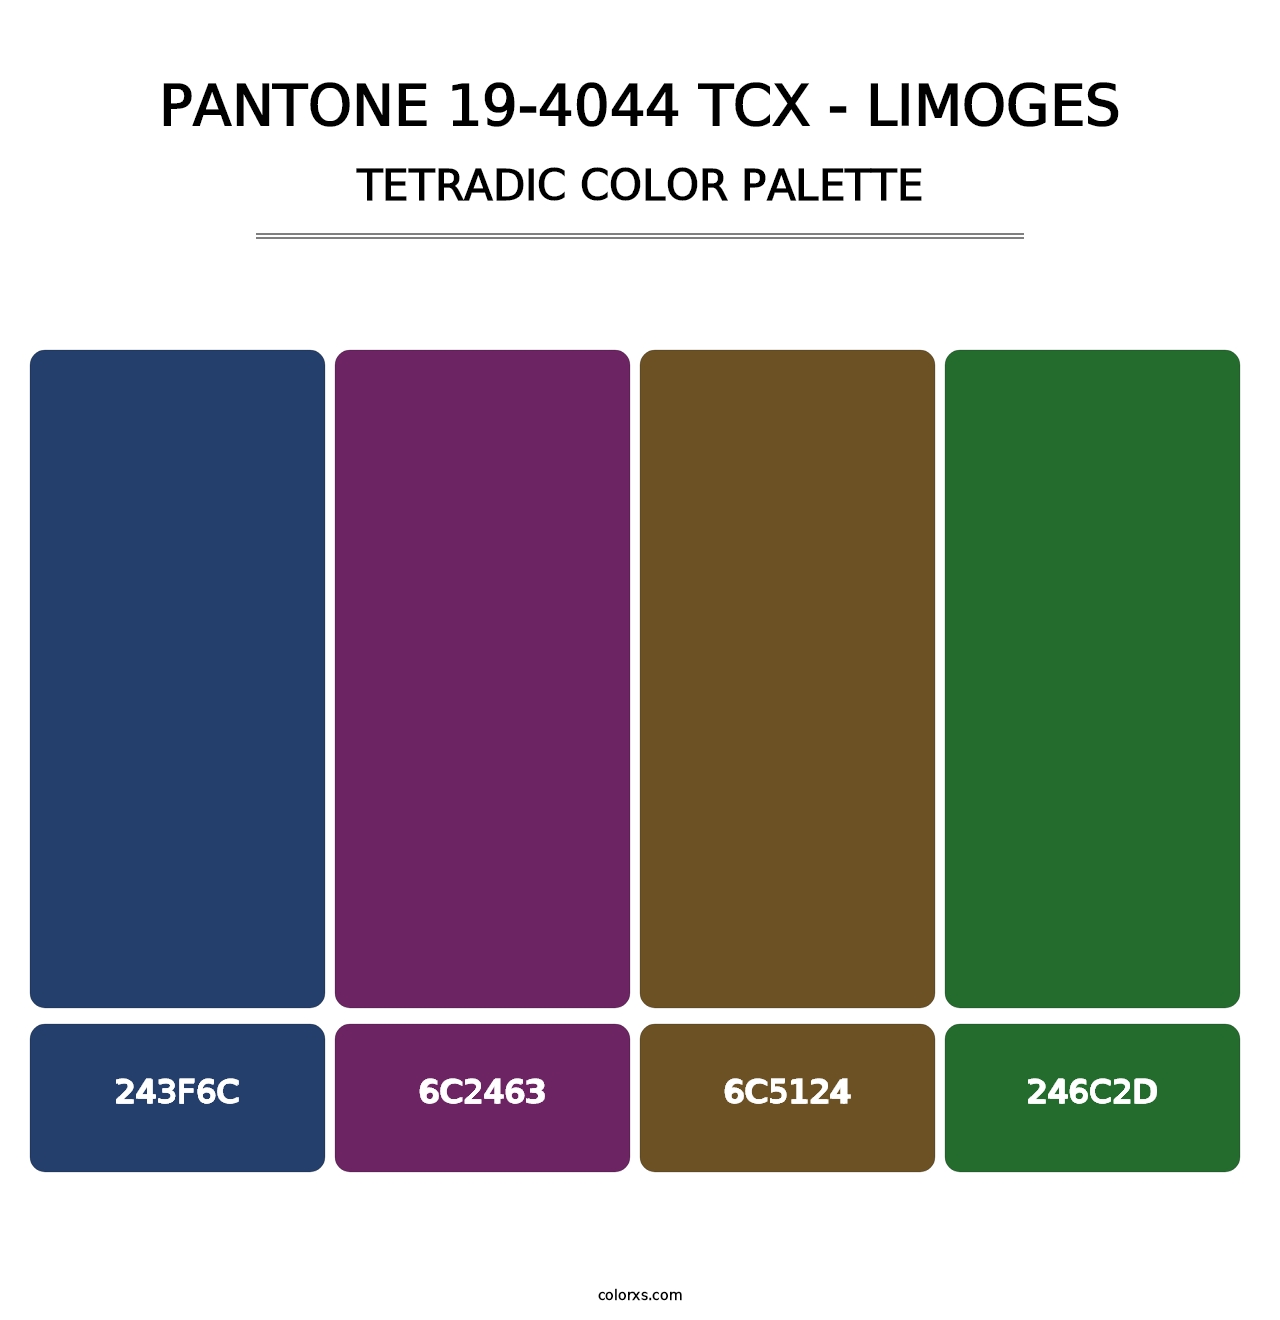 PANTONE 19-4044 TCX - Limoges - Tetradic Color Palette